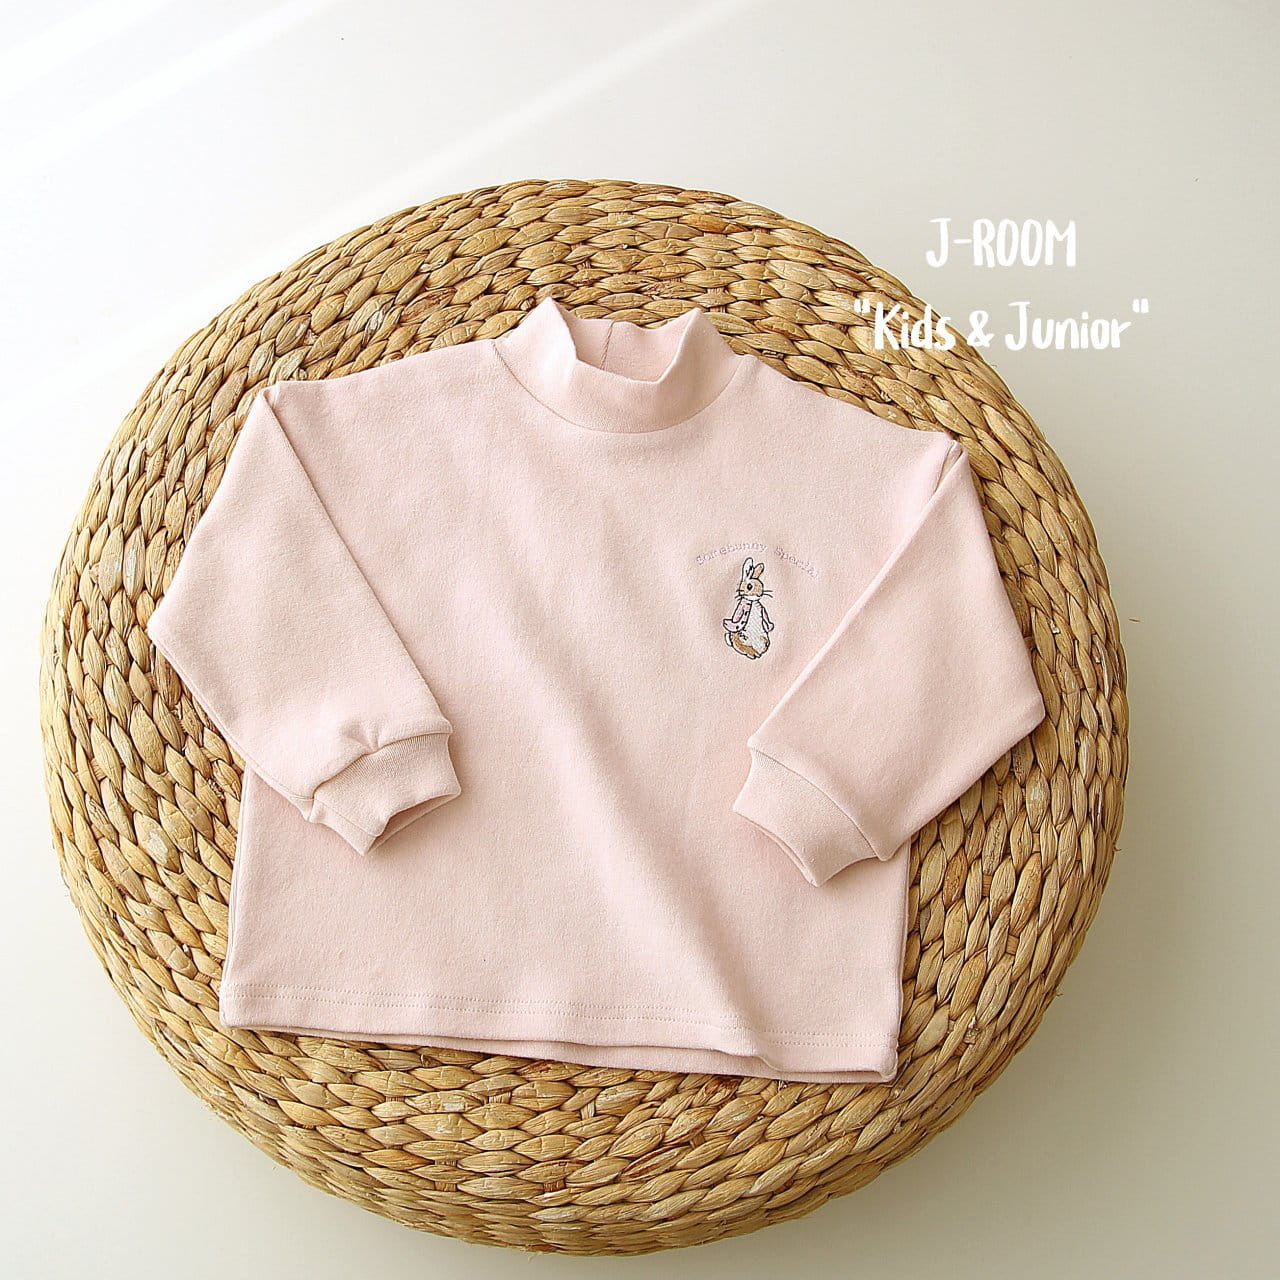 J-Room - Korean Children Fashion - #childrensboutique - Rabbit Embroider Half Turtleneck Tee - 10